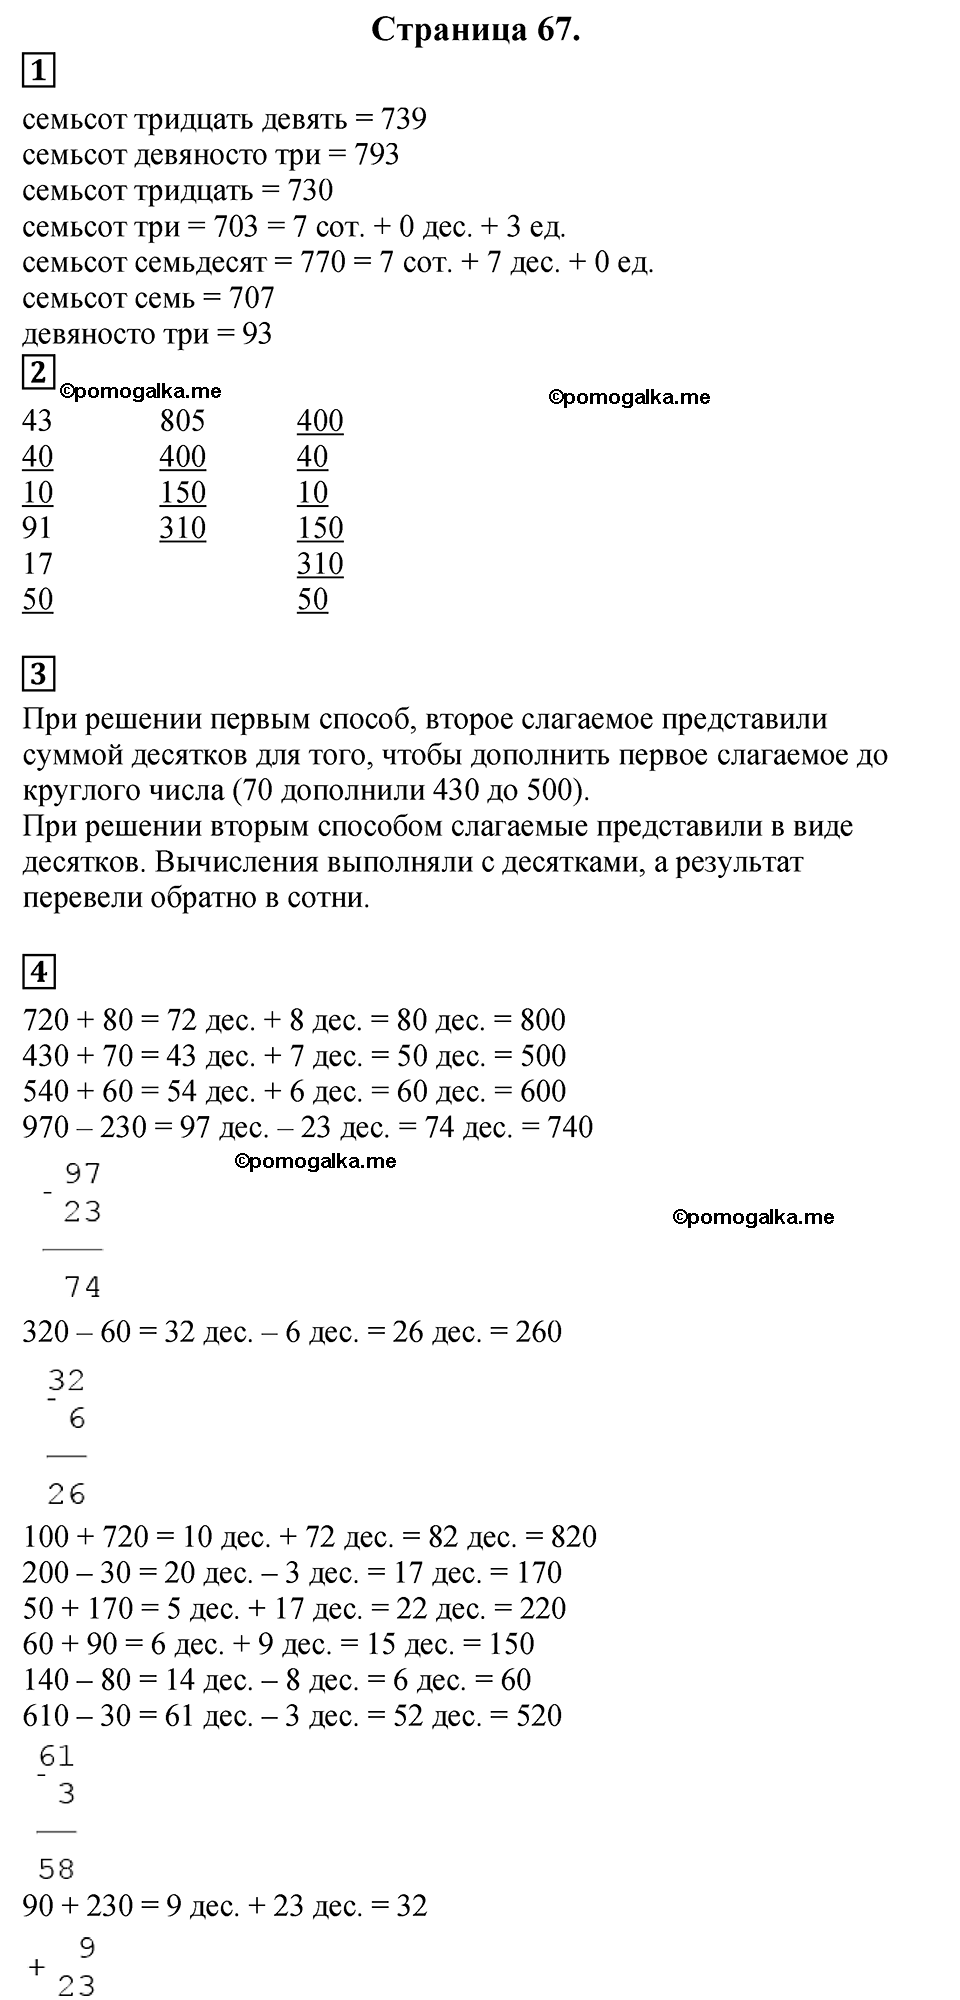 Страница №67 Часть 2 математика 3 класс Дорофеев